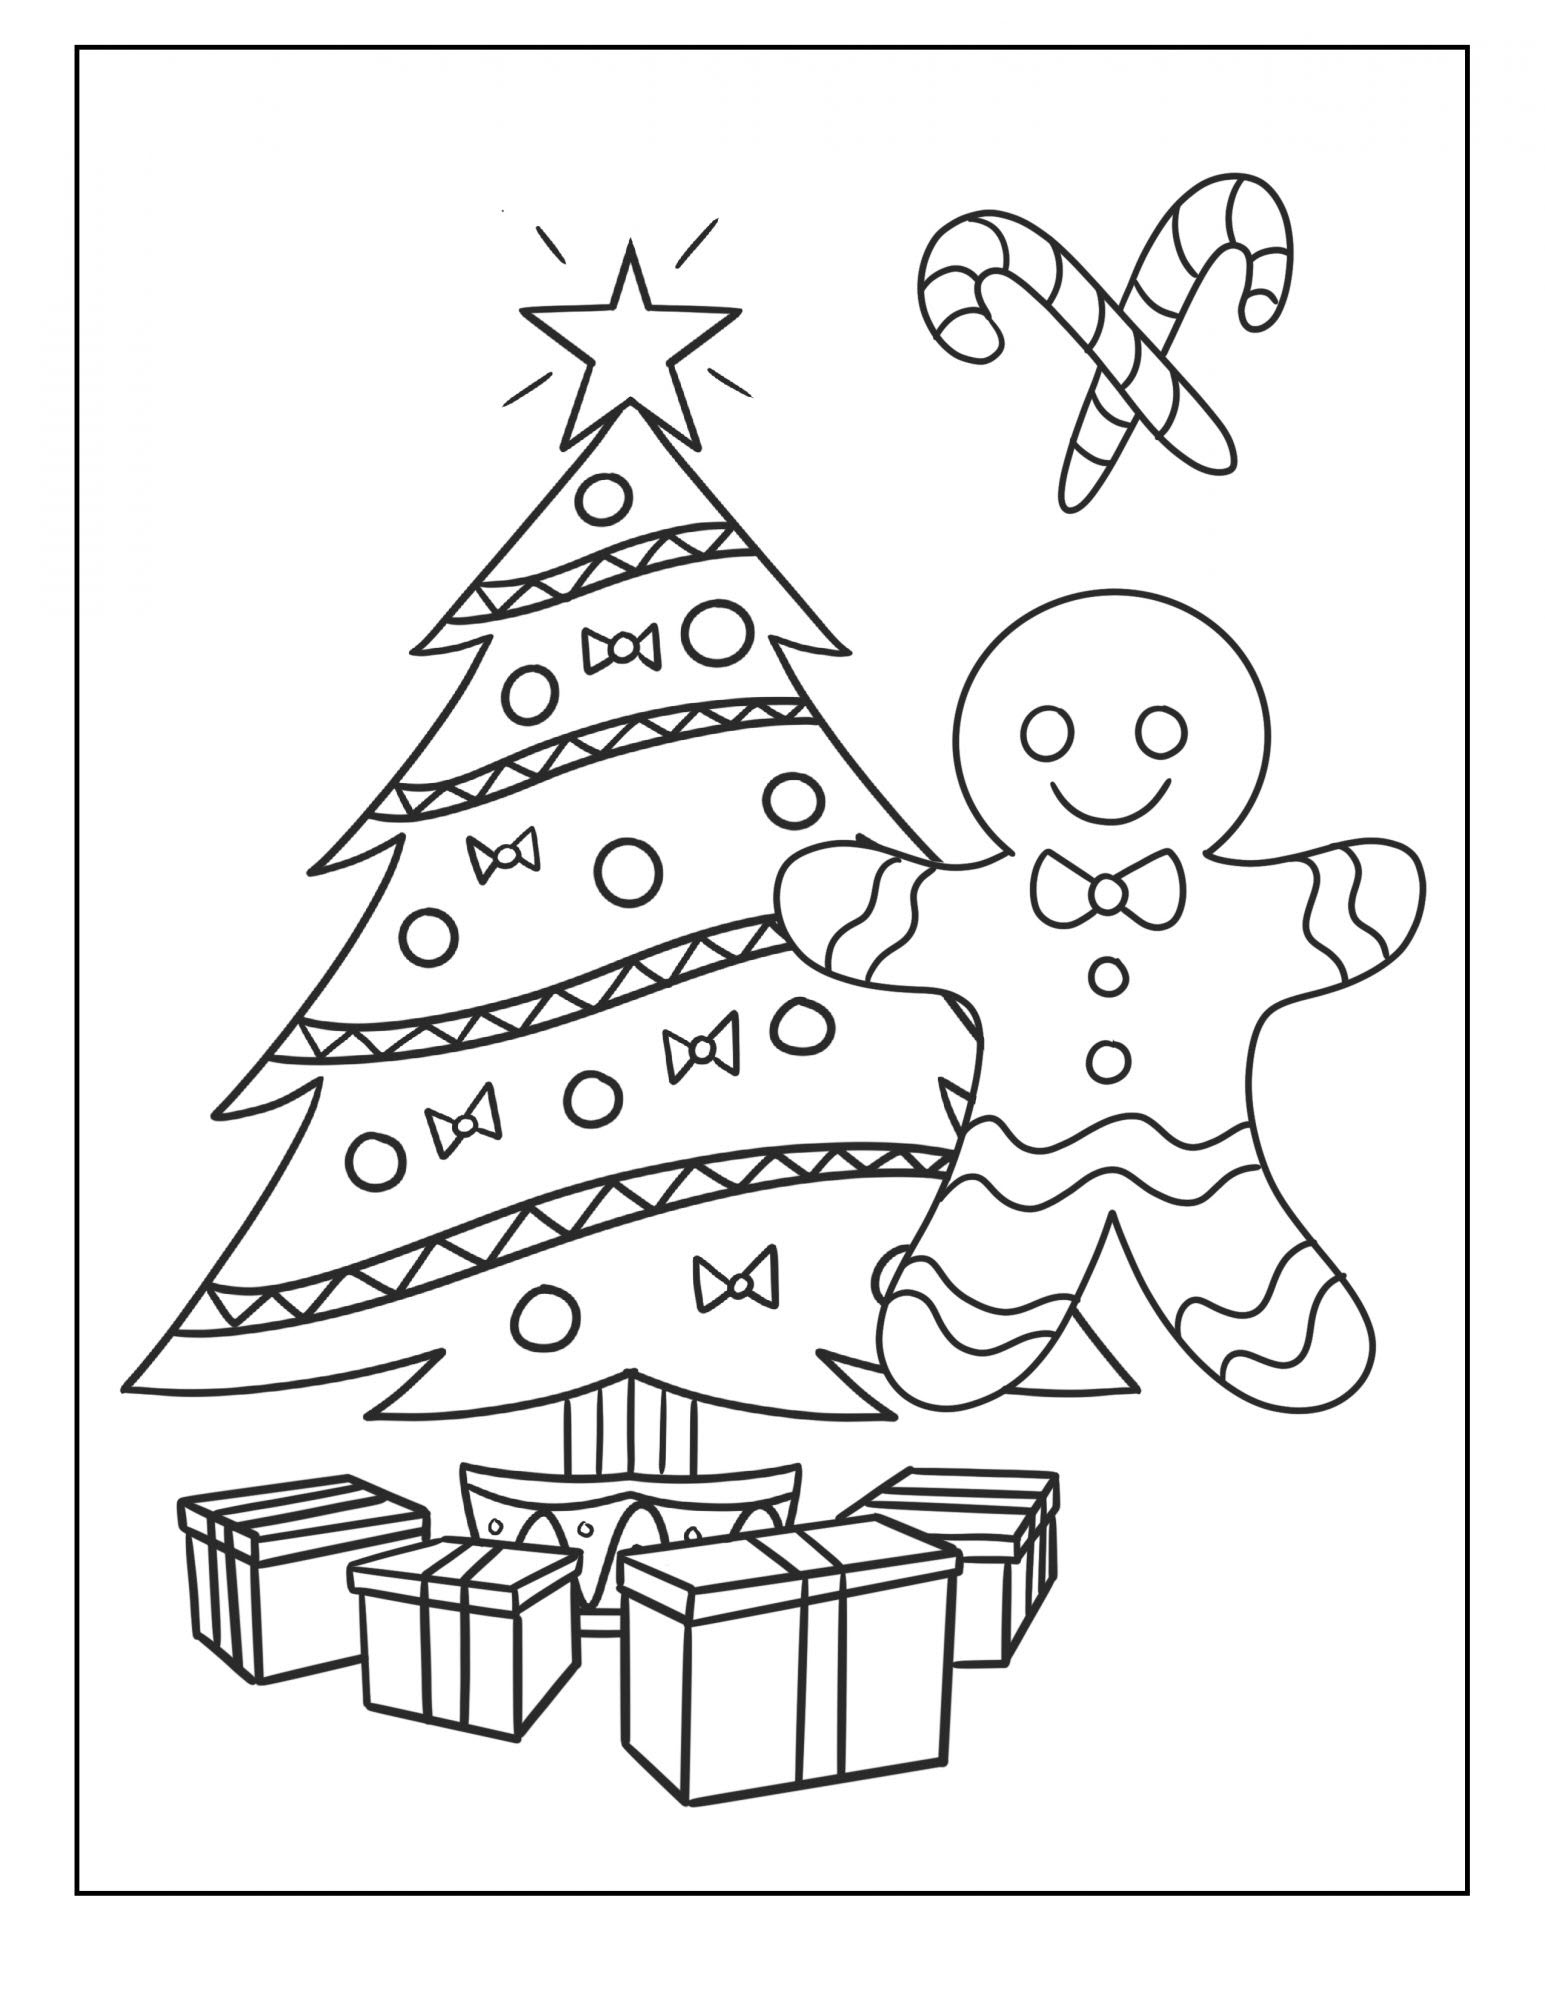 Tranh tô màu cây thông Noel đơn giản cho bé tập tô màu